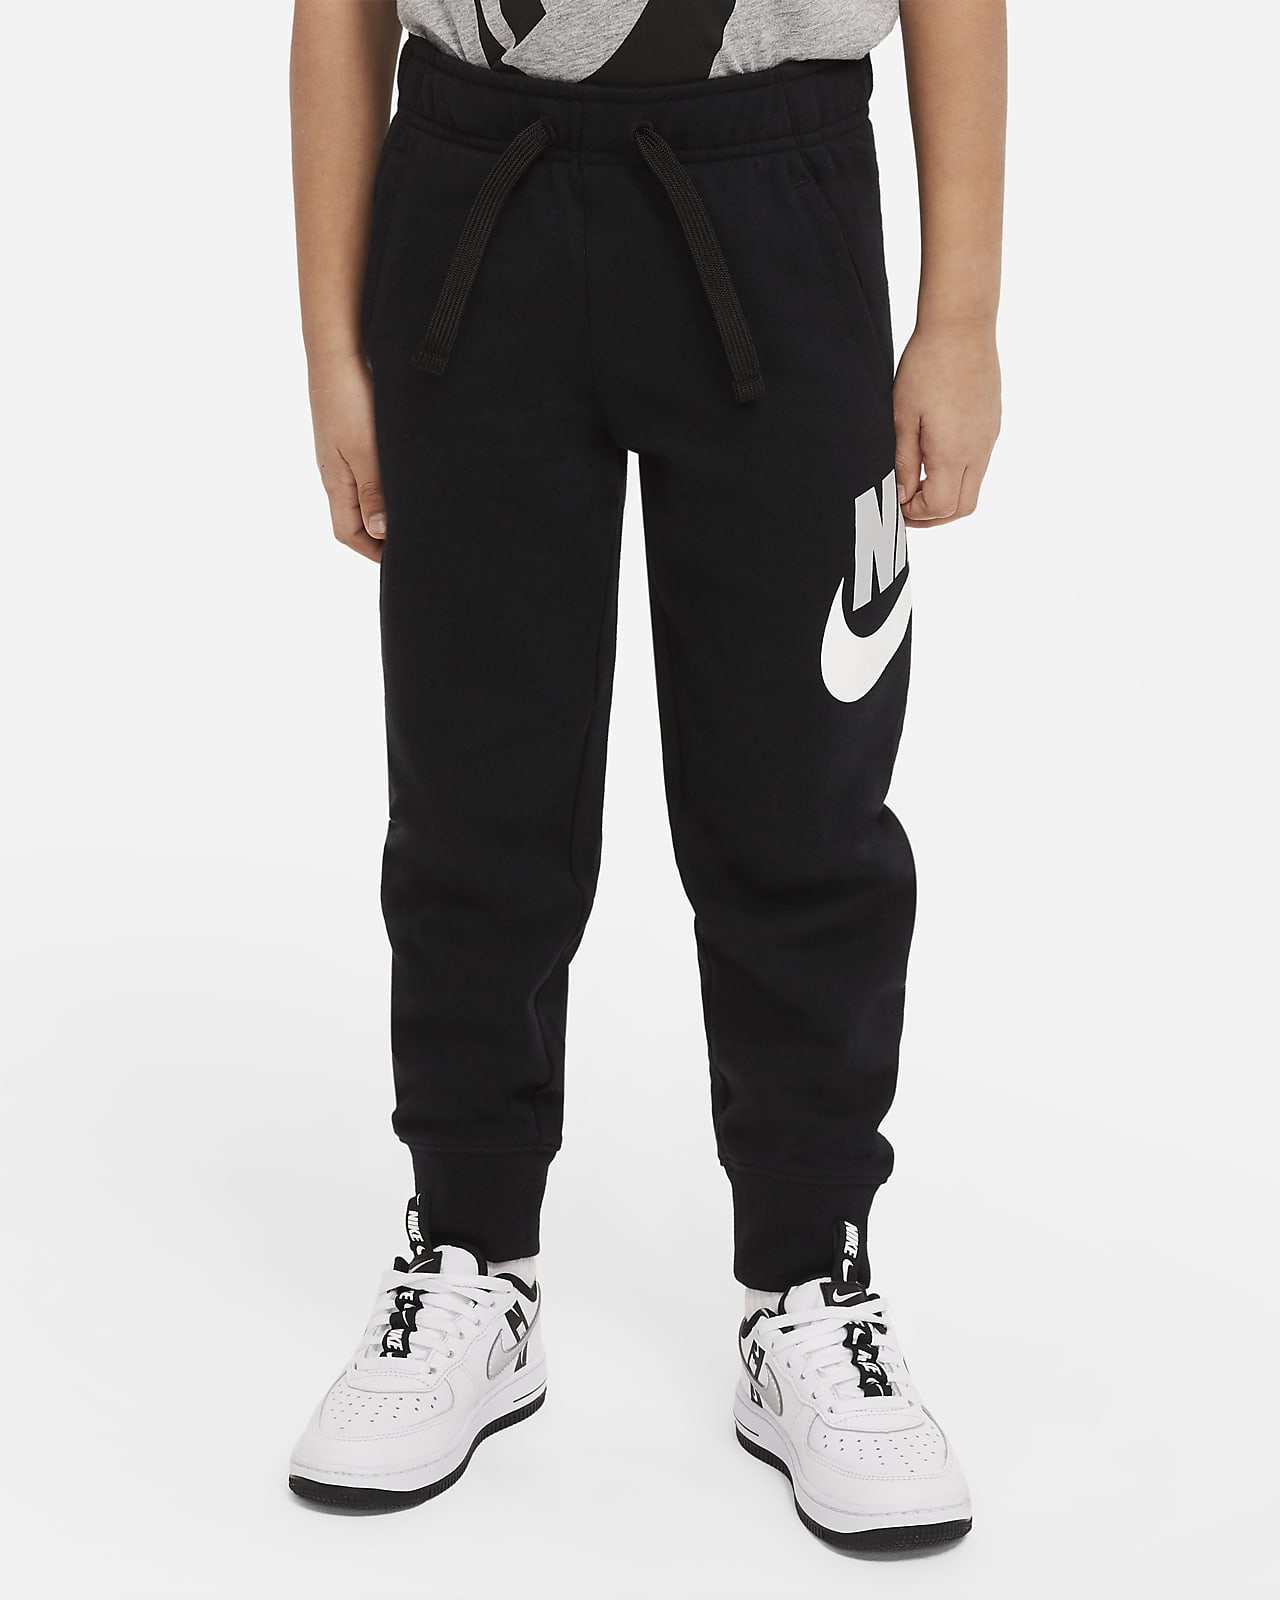 Nike Sportswear Club Fleece Joggers Little Kids Pants.